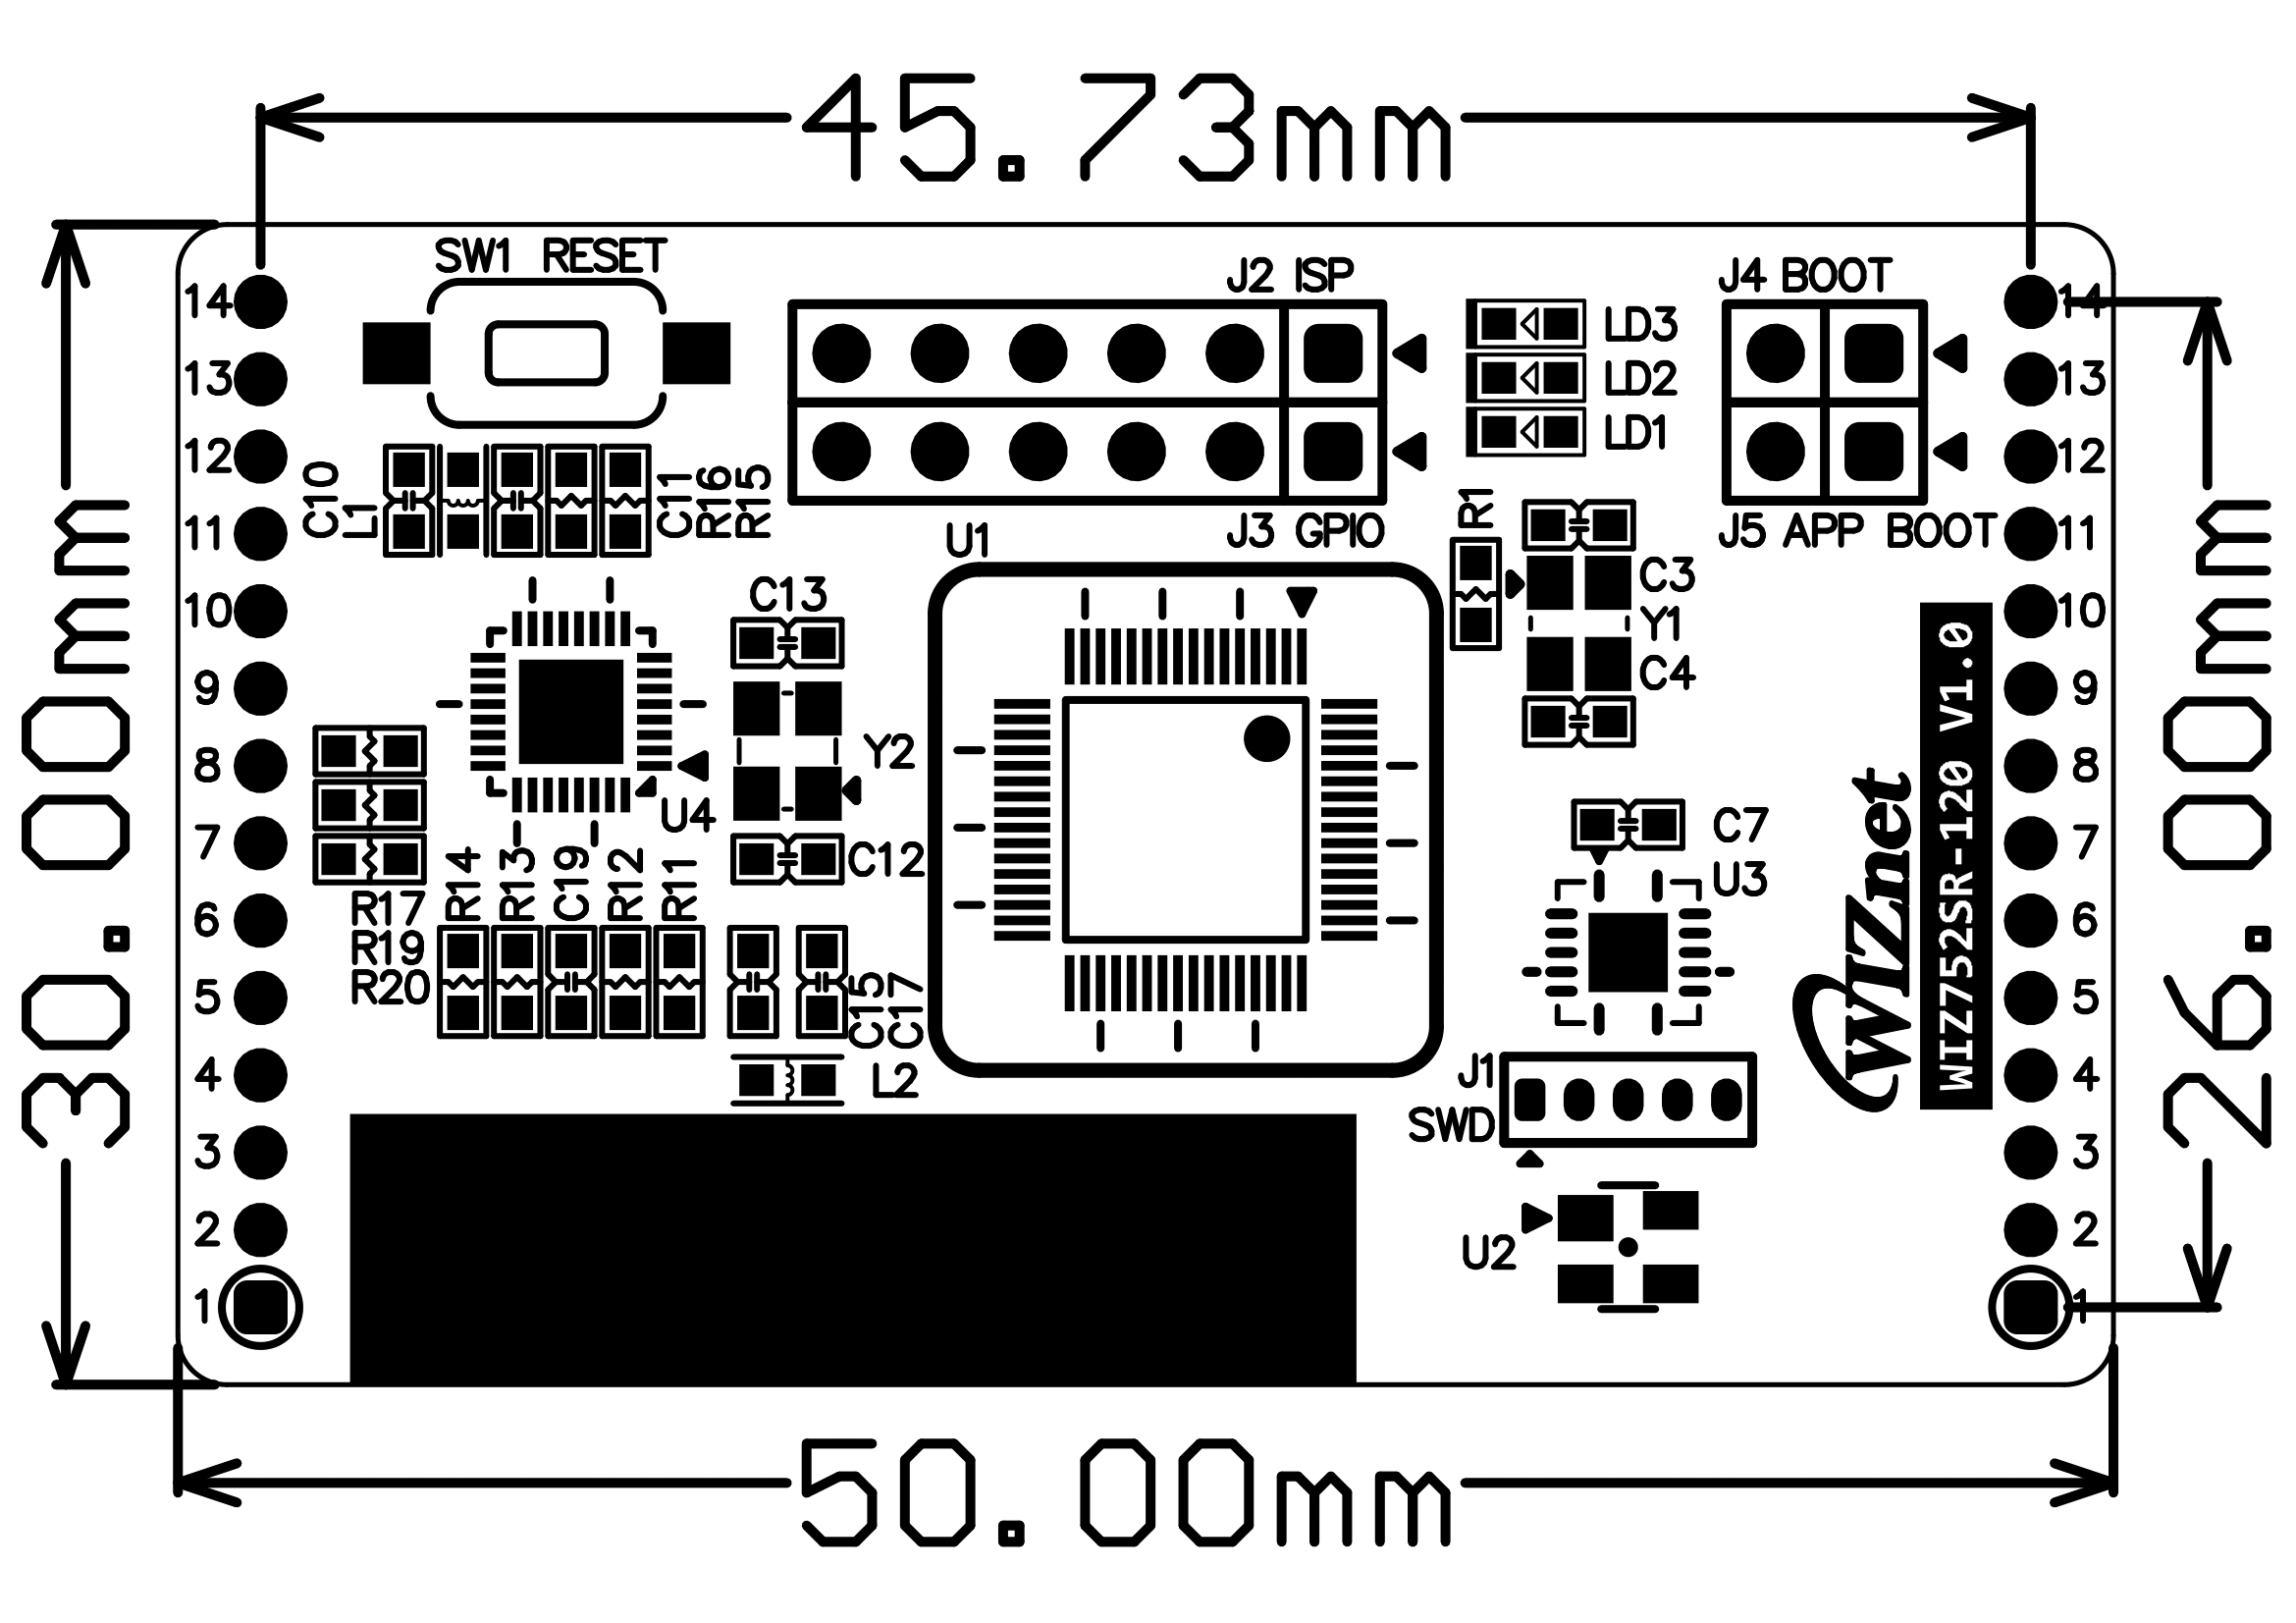 WIZ752SR-120 V1.0 Dimension